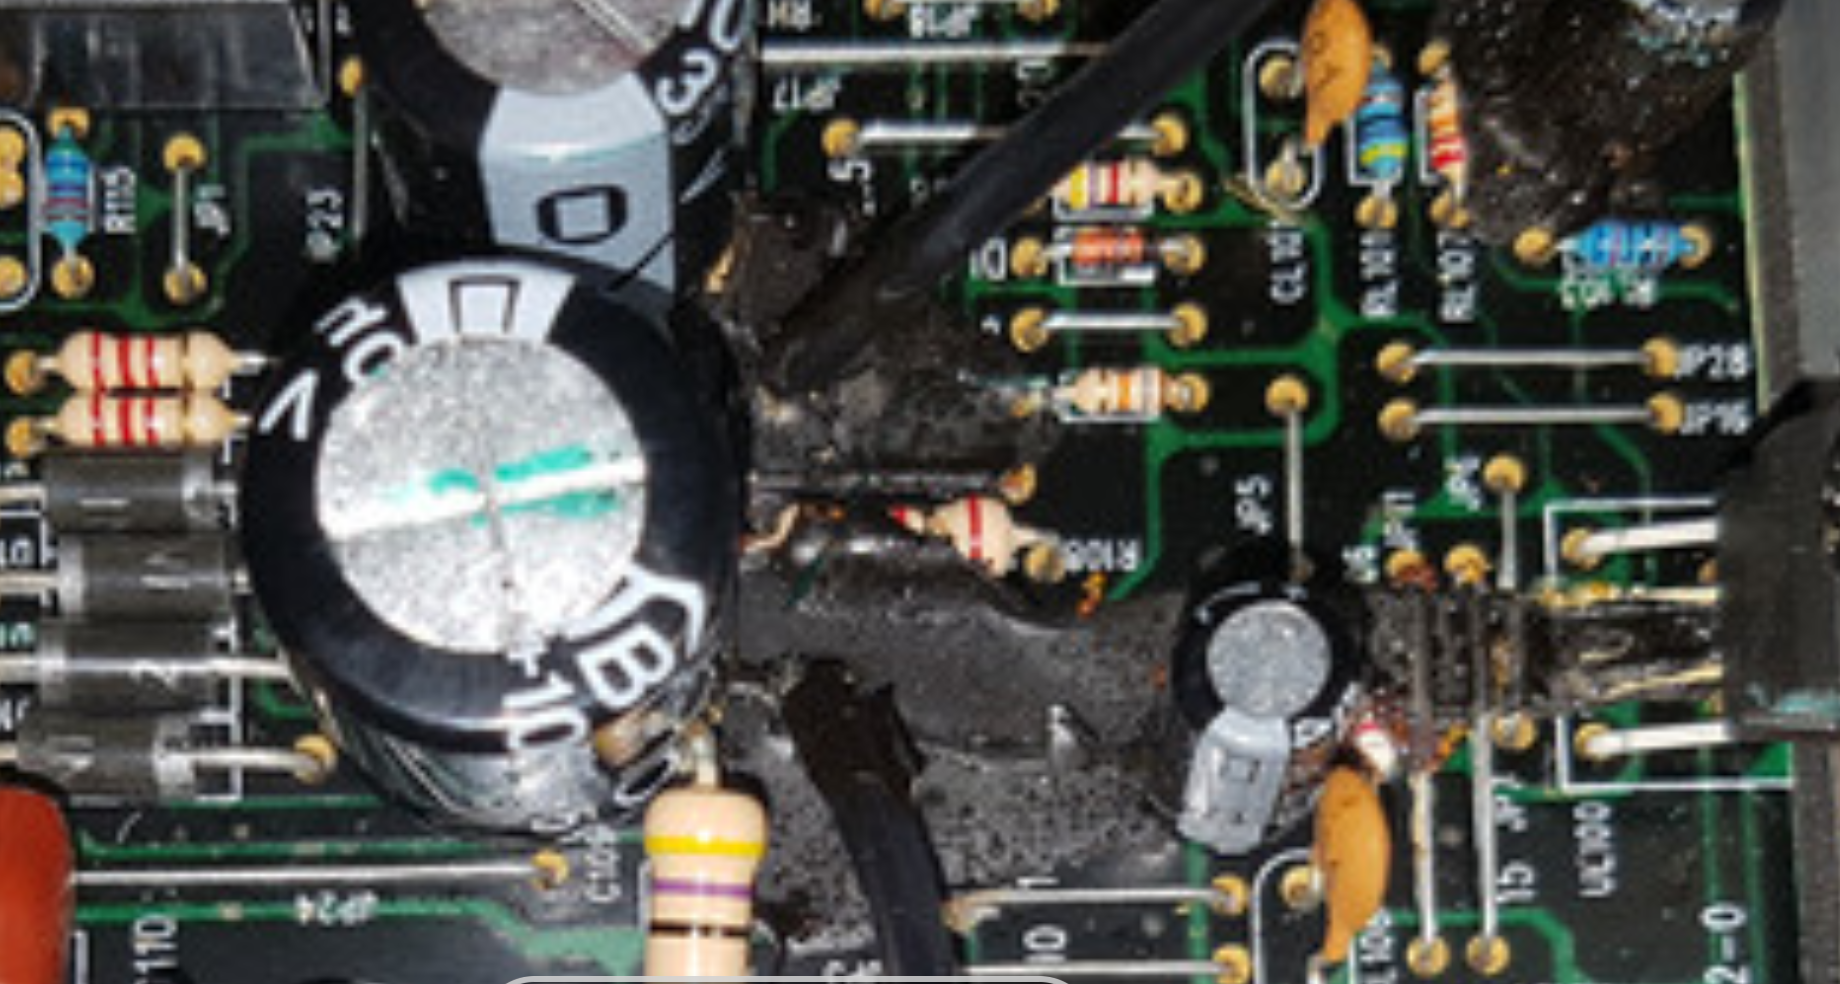 KRK capacitor leaking